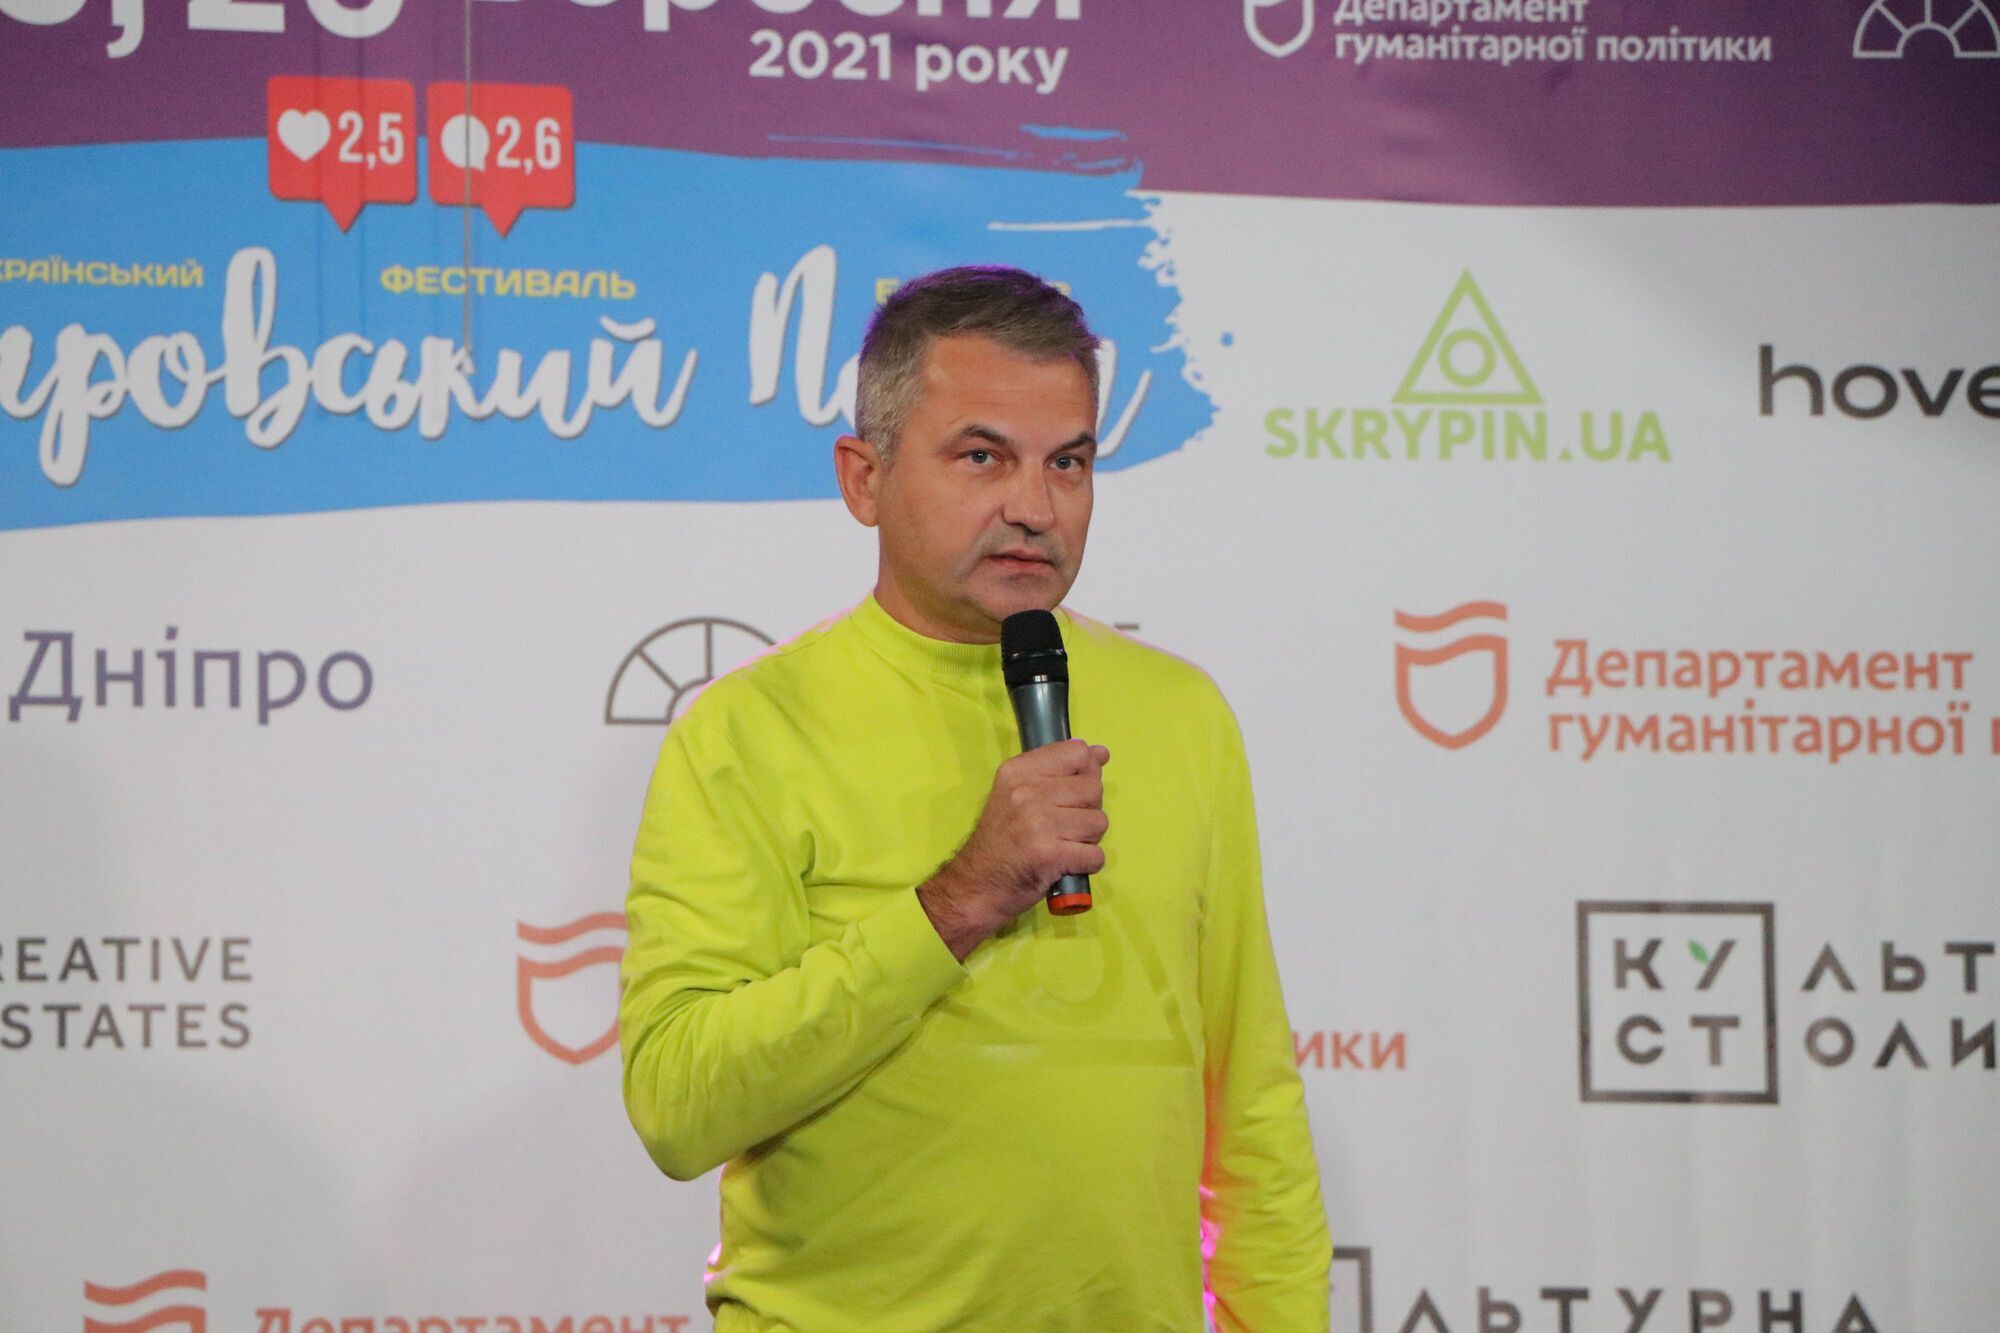 Всеукраїнський фестиваль блогерів "Дніпровський пост" стартував у Дніпрі